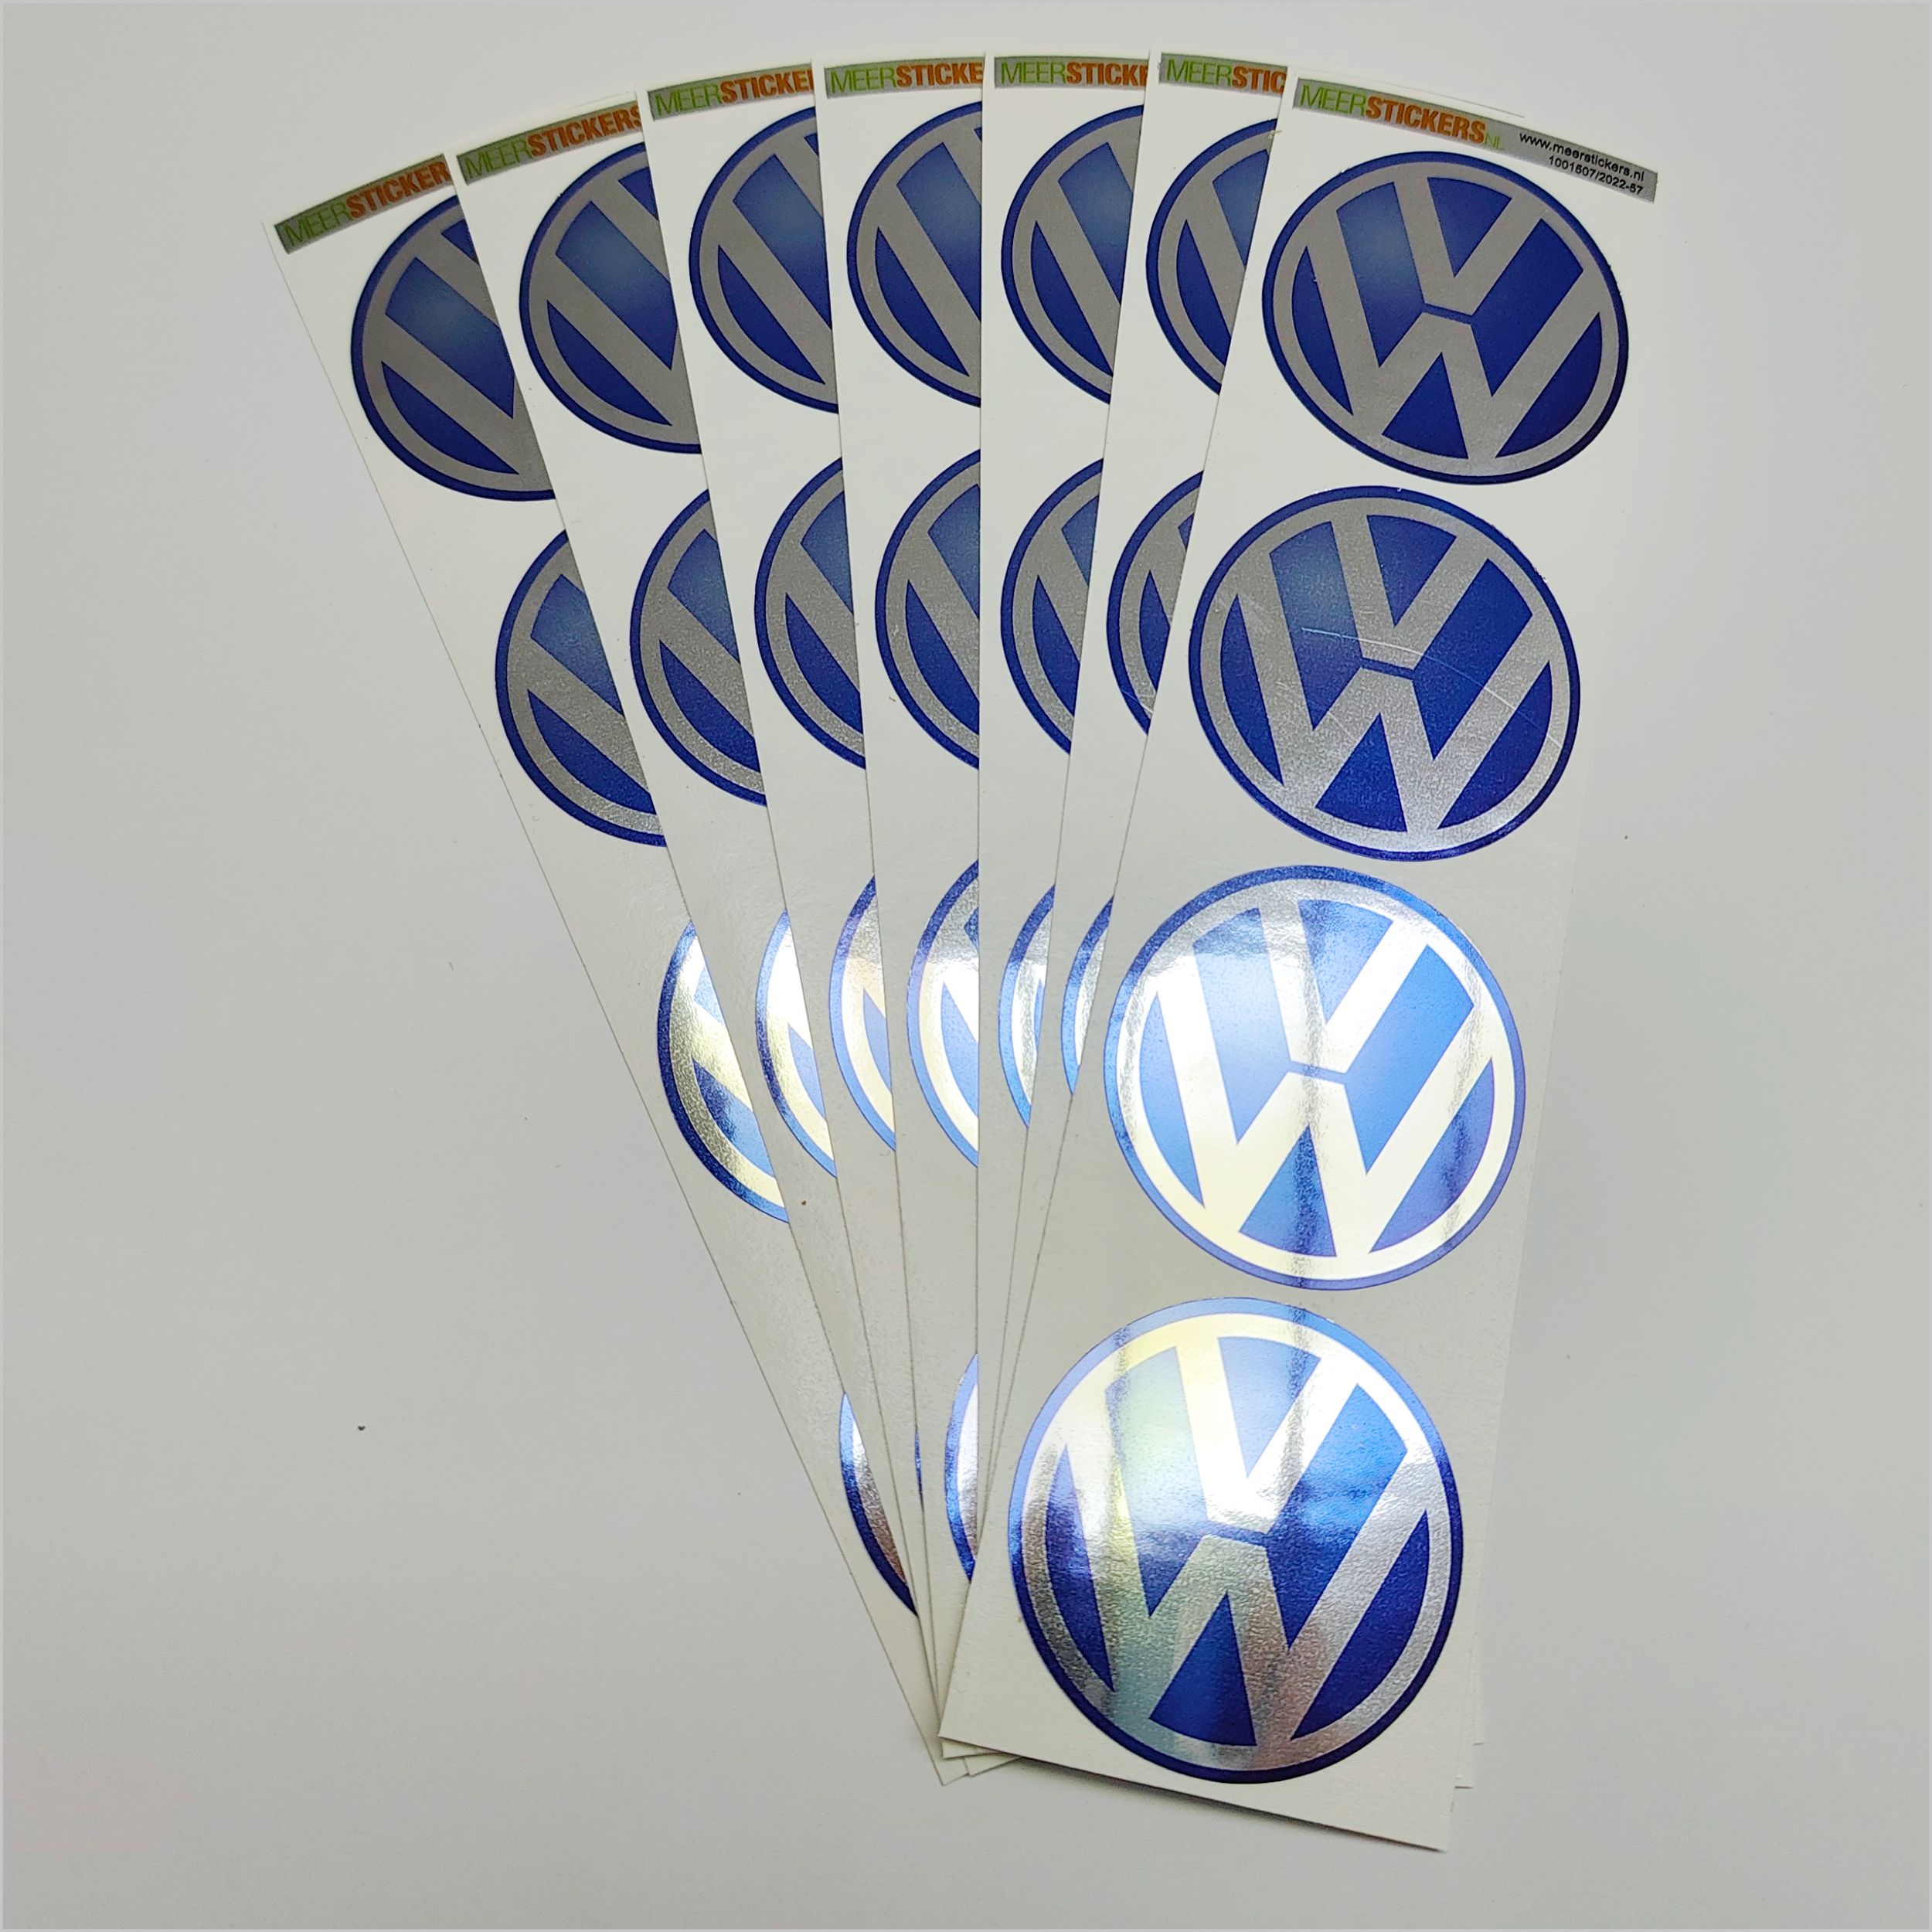 Wielnaaf stickers VW Blauw Chroom